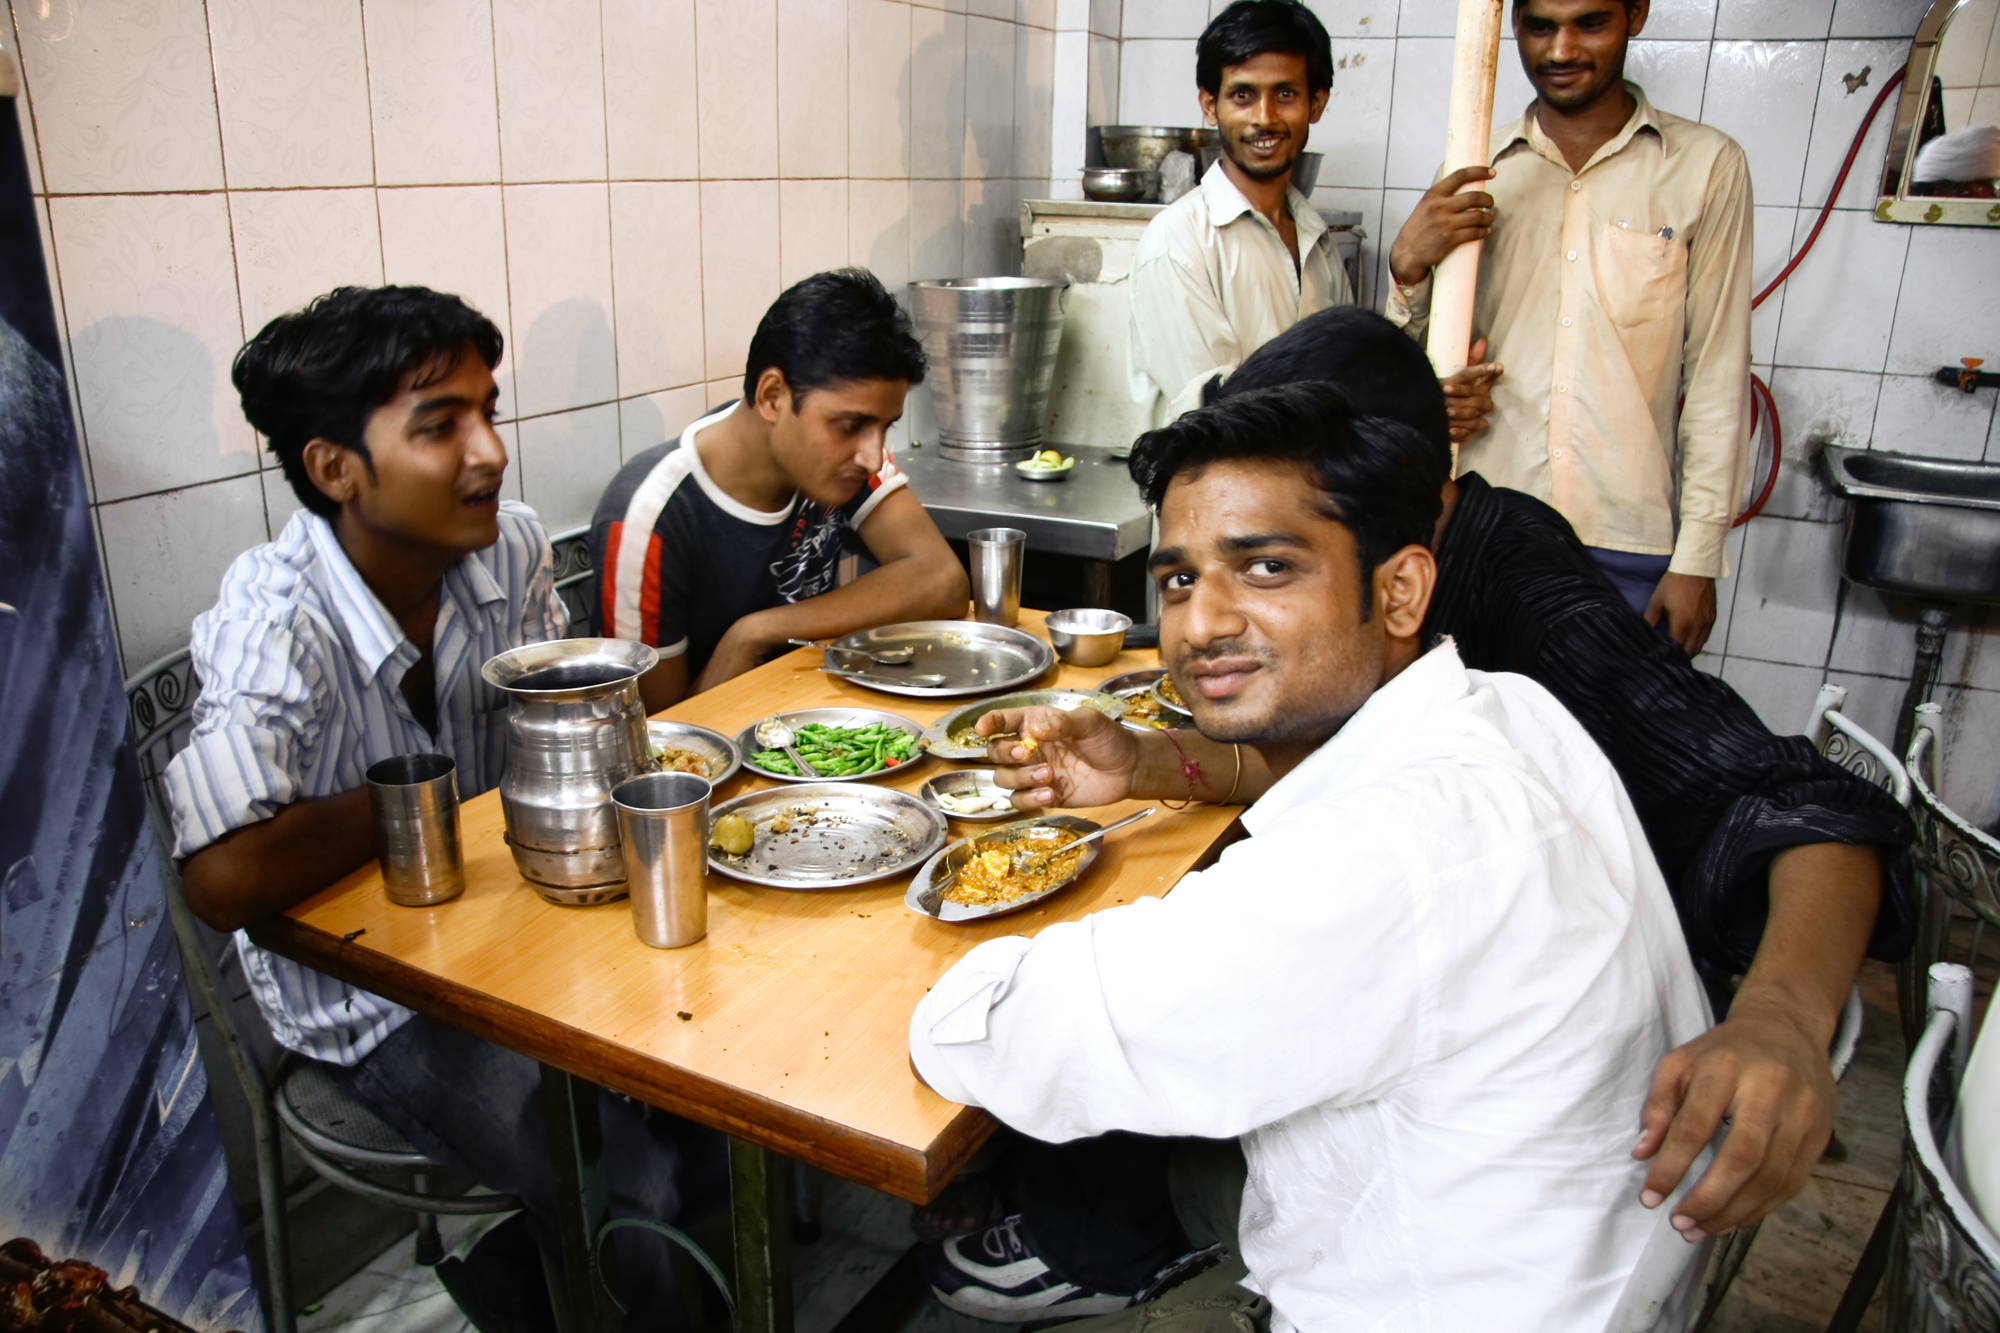 Jovens indianos em um refeitório